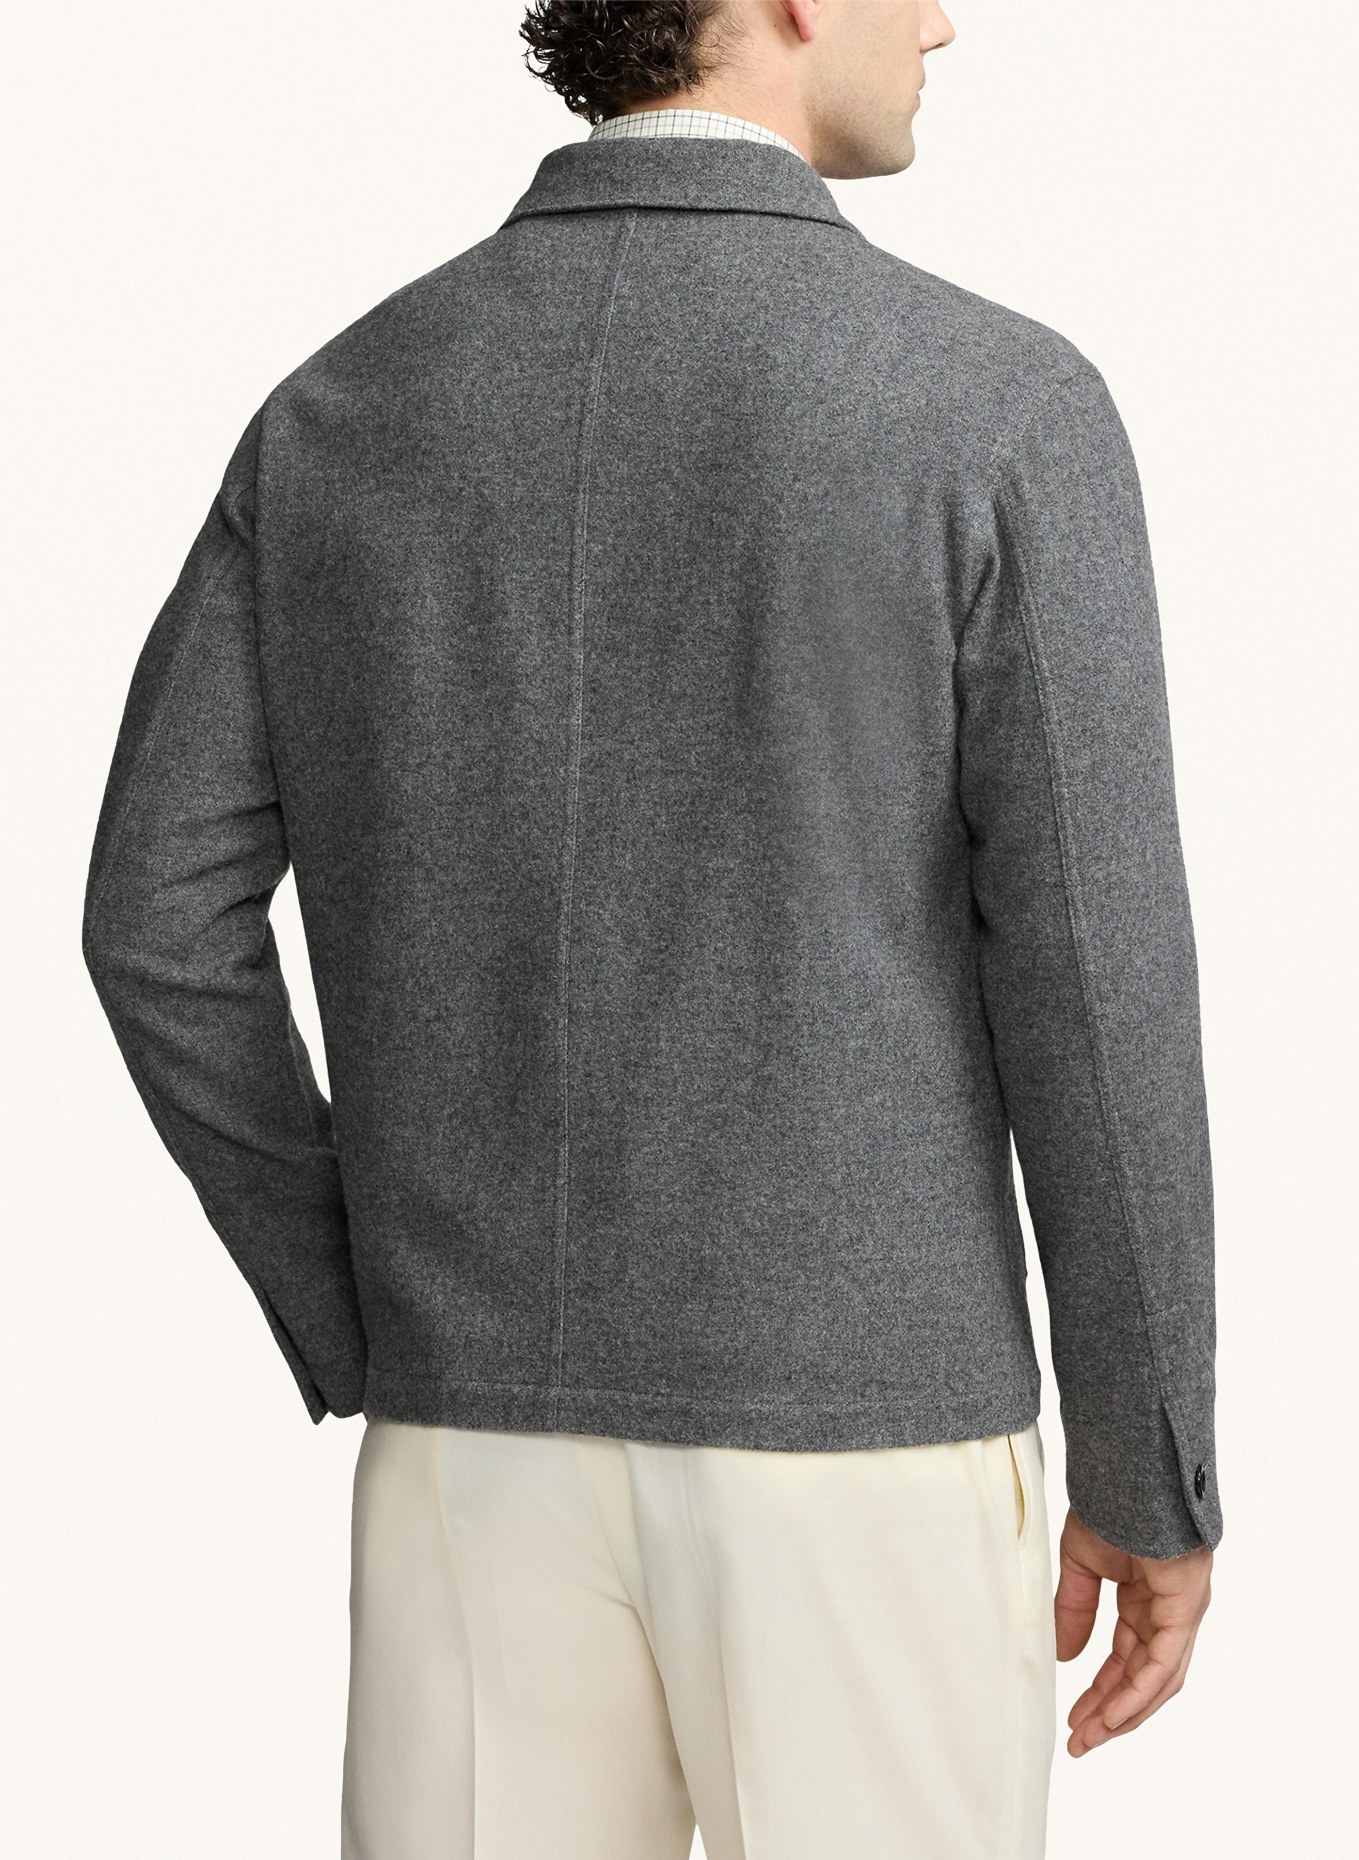 RALPH LAUREN PURPLE LABEL Overshirt, Color: GRAY (Image 3)